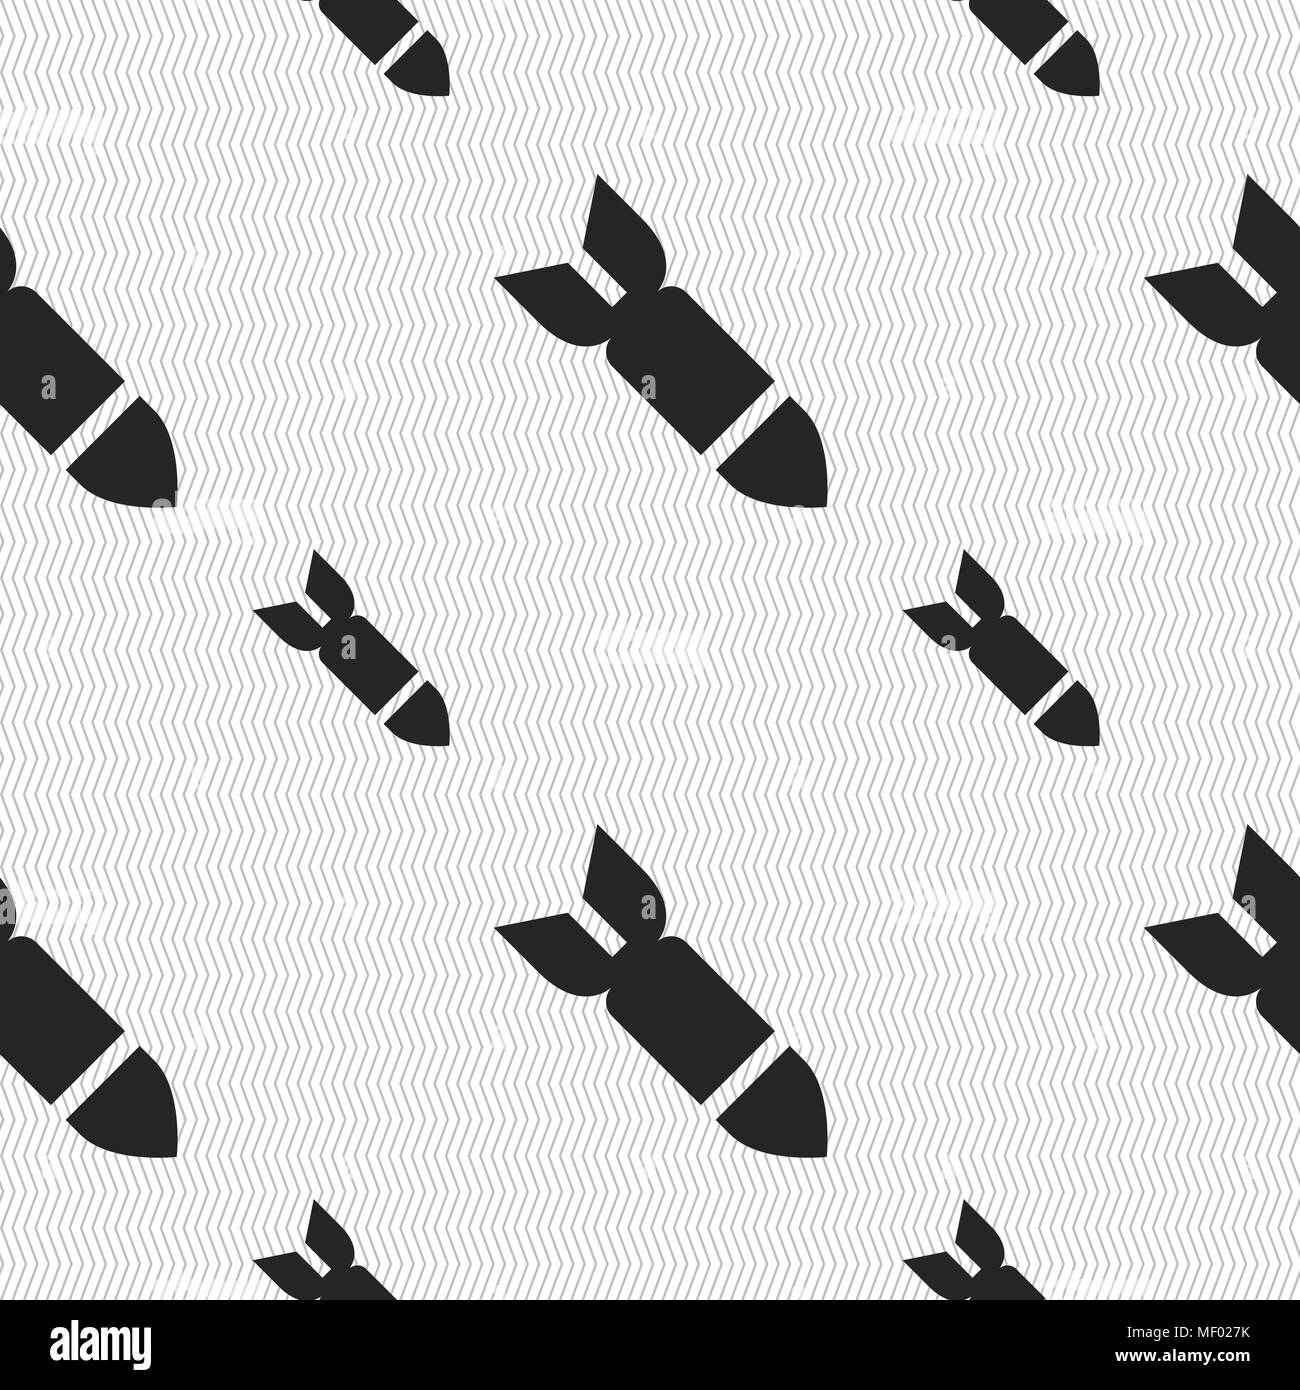 Rakete Rakete Waffensymbol unterzeichnen. Nahtlose Muster mit geometrischen Struktur. Vector Illustration Stock Vektor